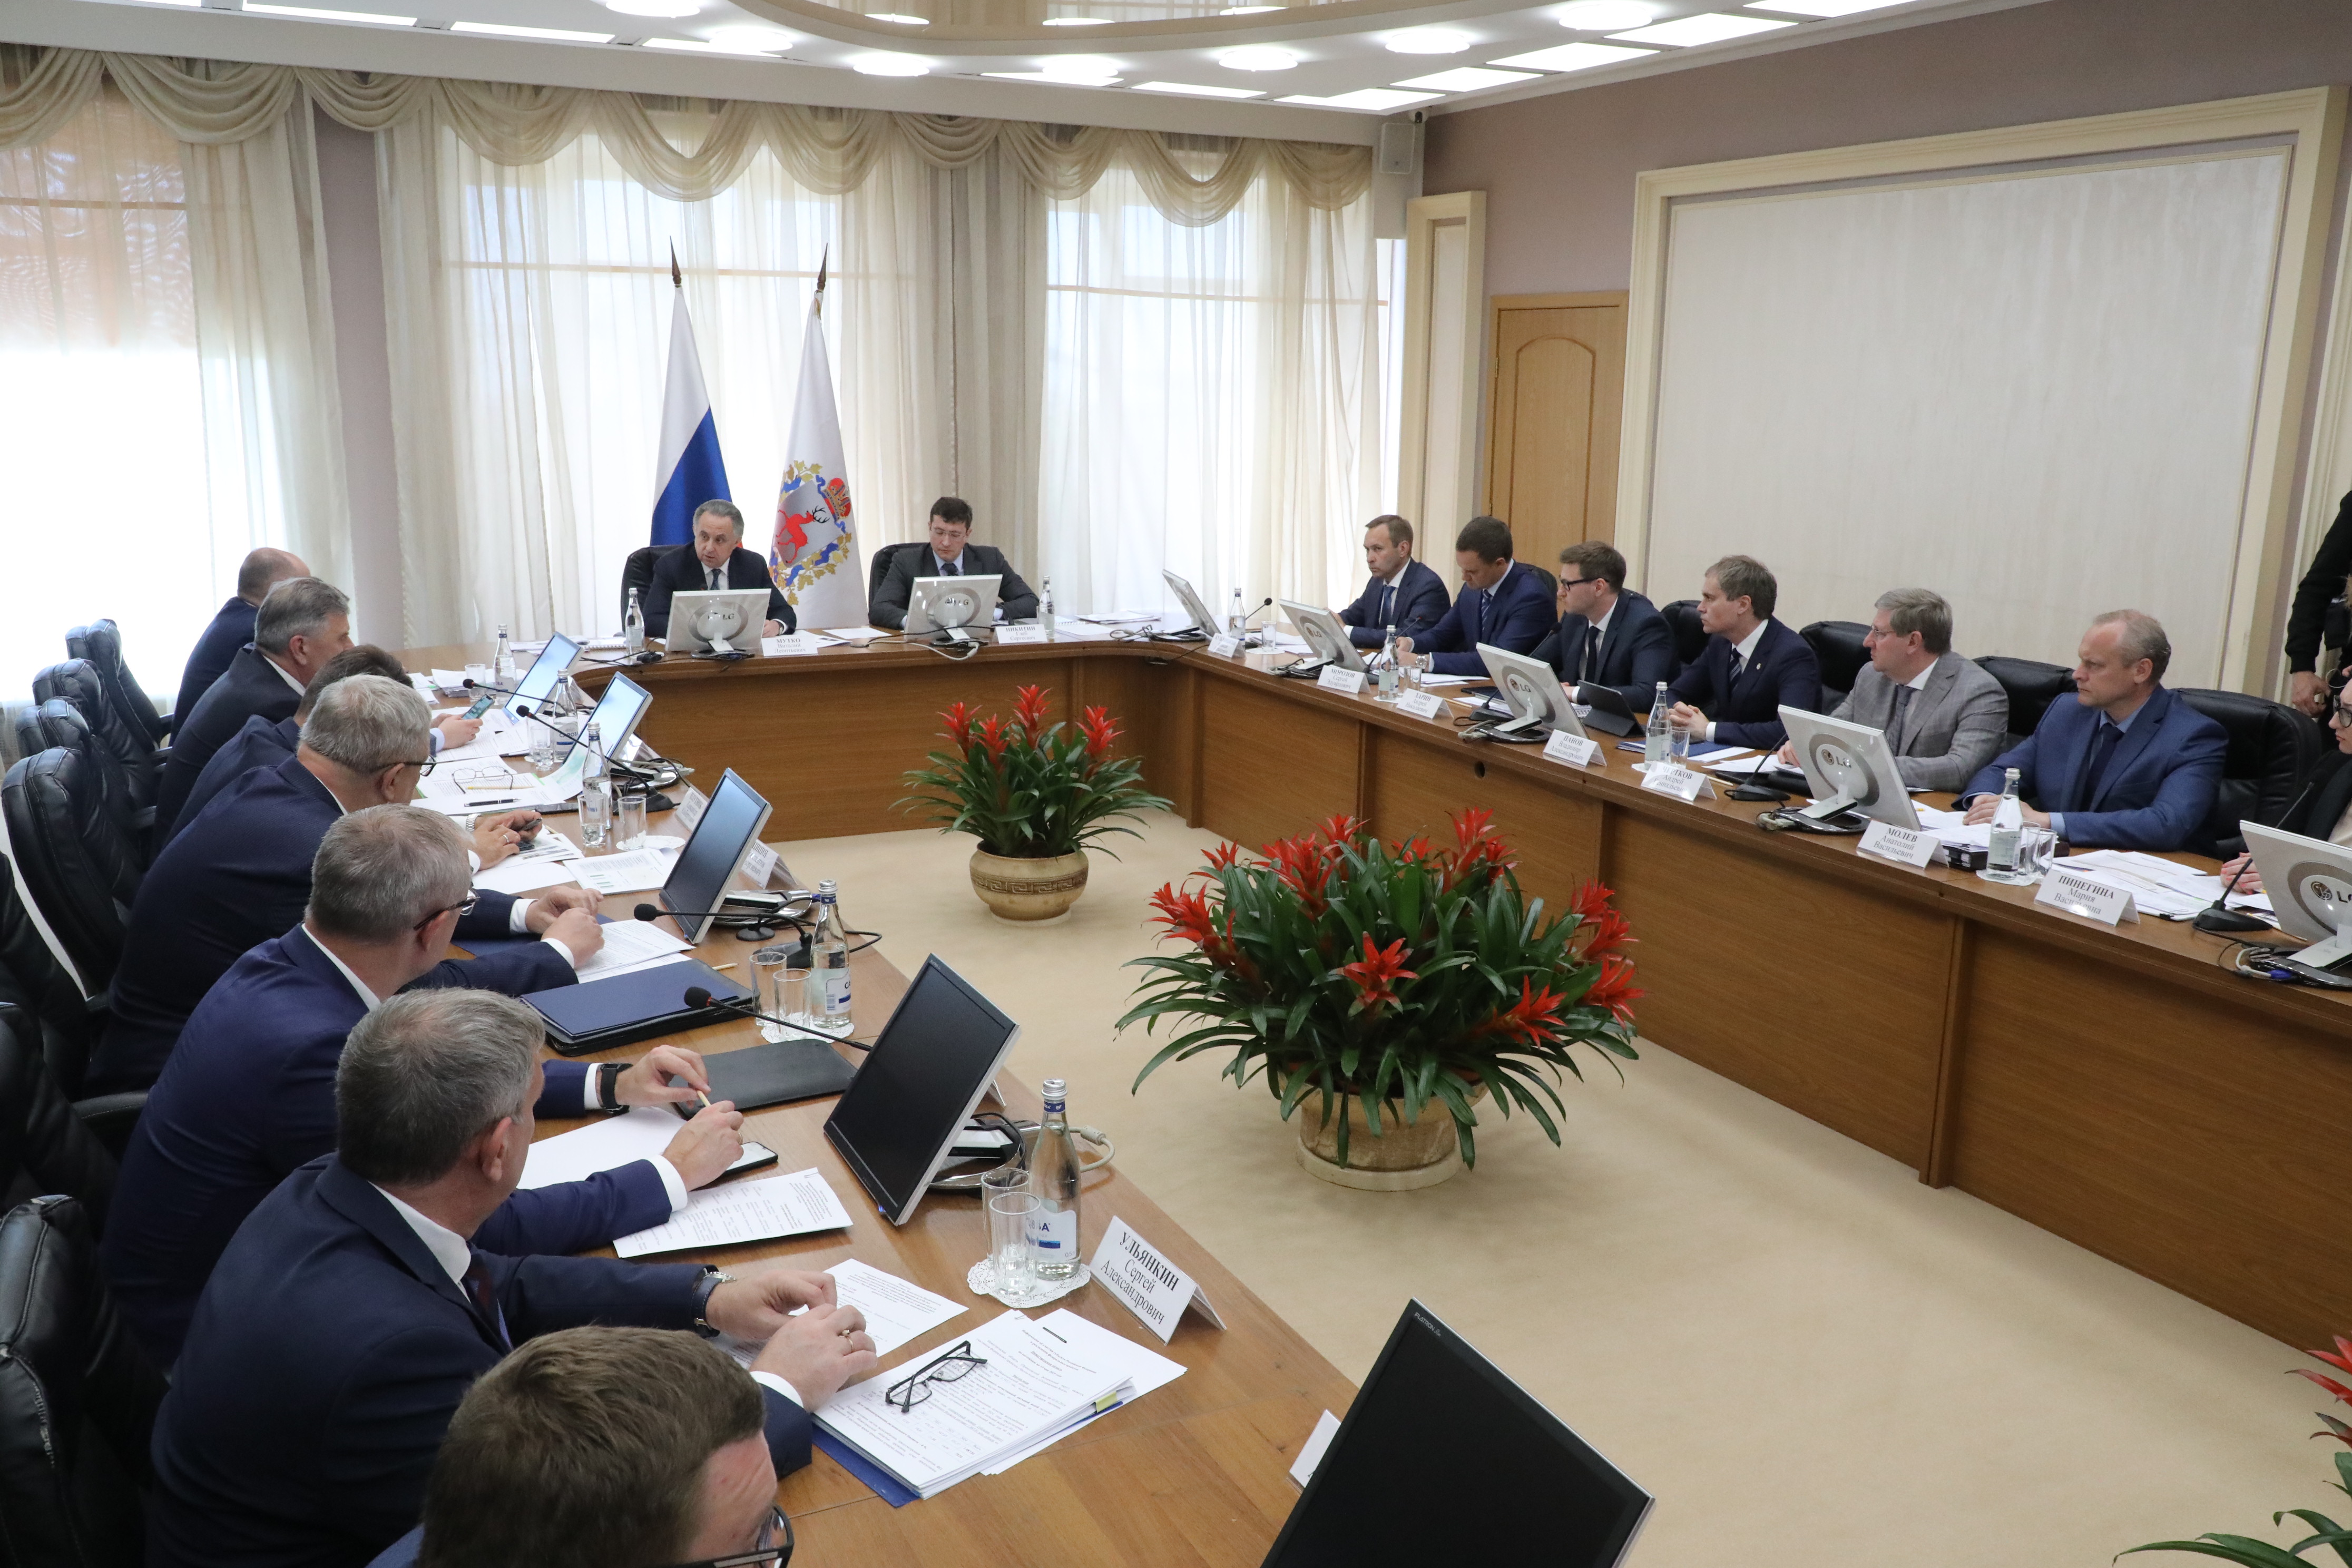 Глеб Никитин и Виталий Мутко обсудили реализацию нацпроекта Жилье и городская среда в Нижегородской области